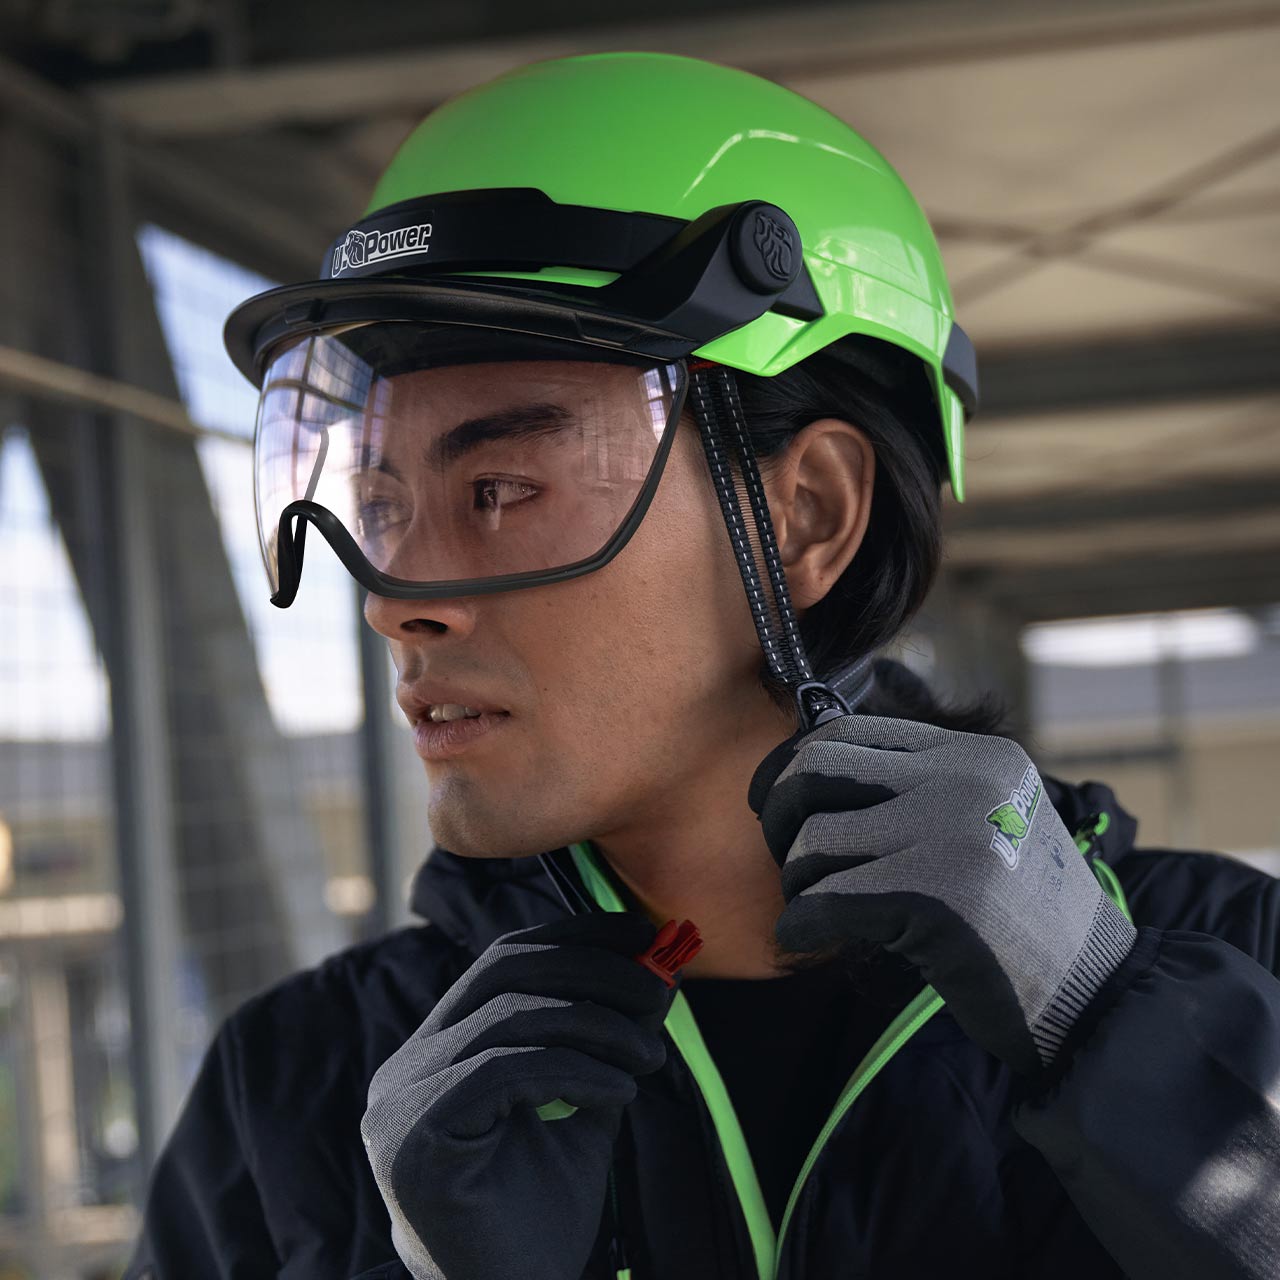 casco da lavoro upower modello antares colore verde fluo indossato vista frontale